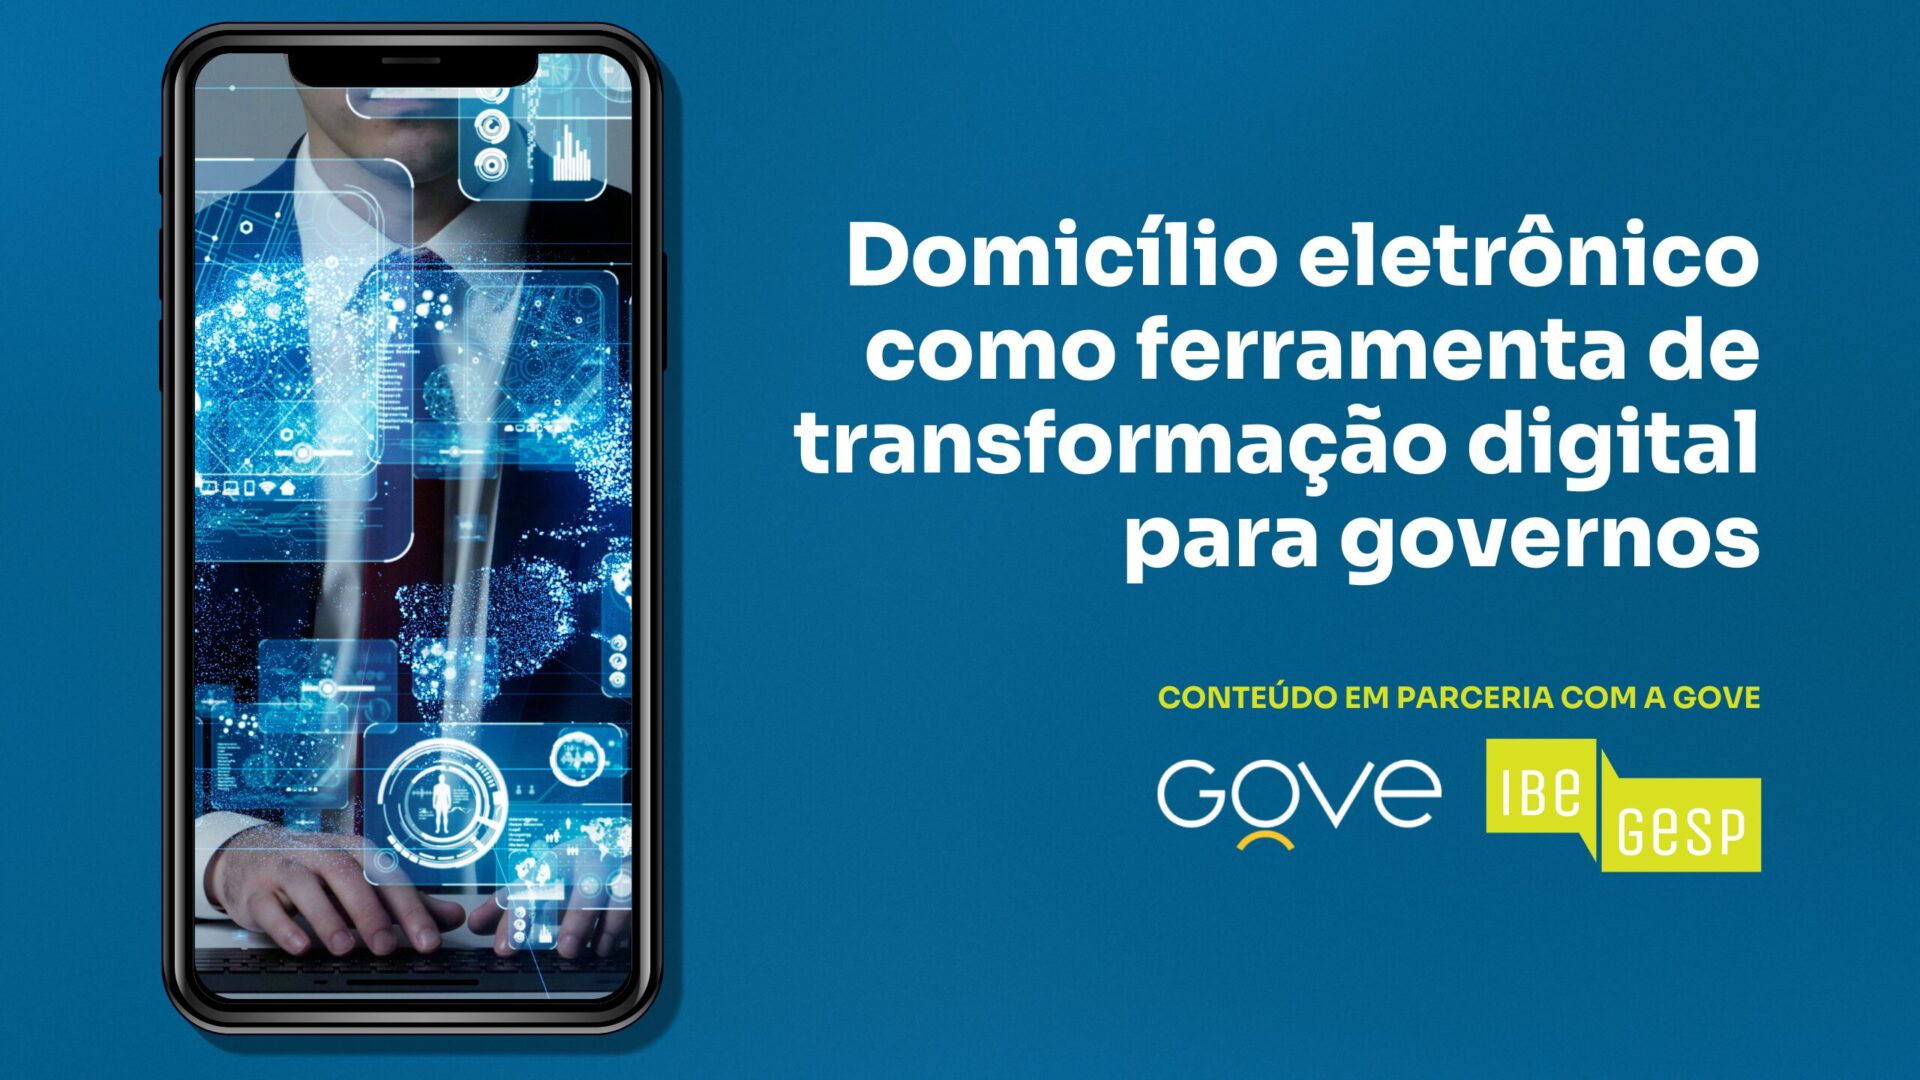 Domicílio eletrônico como ferramenta de transformação digital para governos